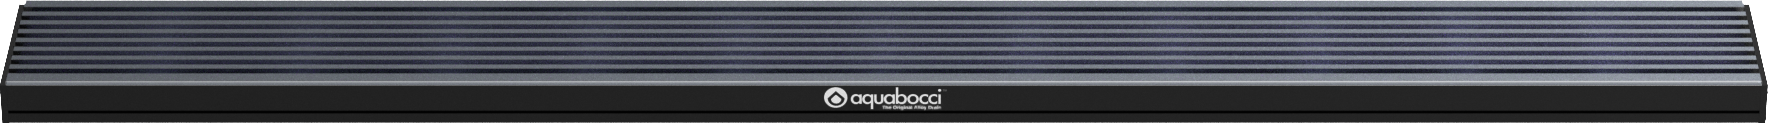 A30 Shower Kit | 1200mm / 94 Inch Length - Aquabocci Ltd